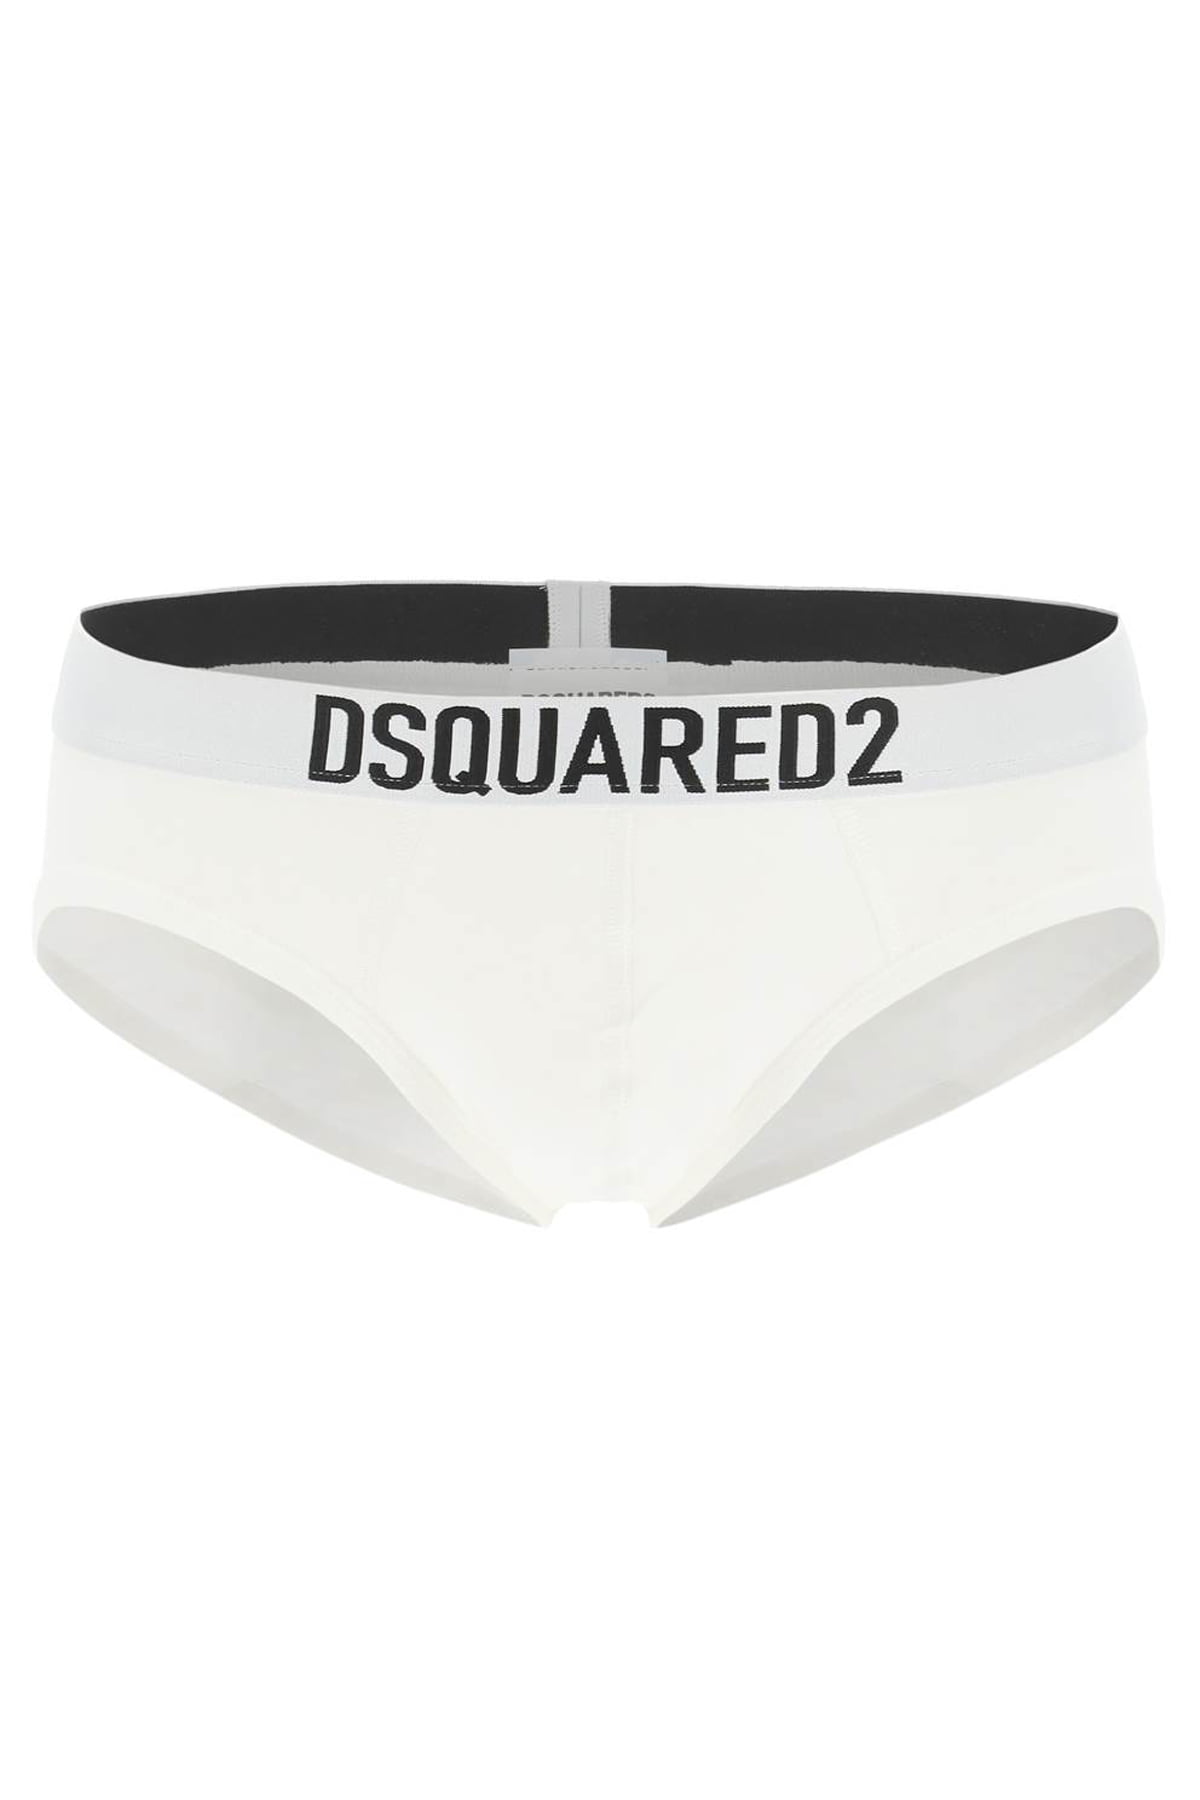 Dsquared2 logo underwear brief - Walmart.com